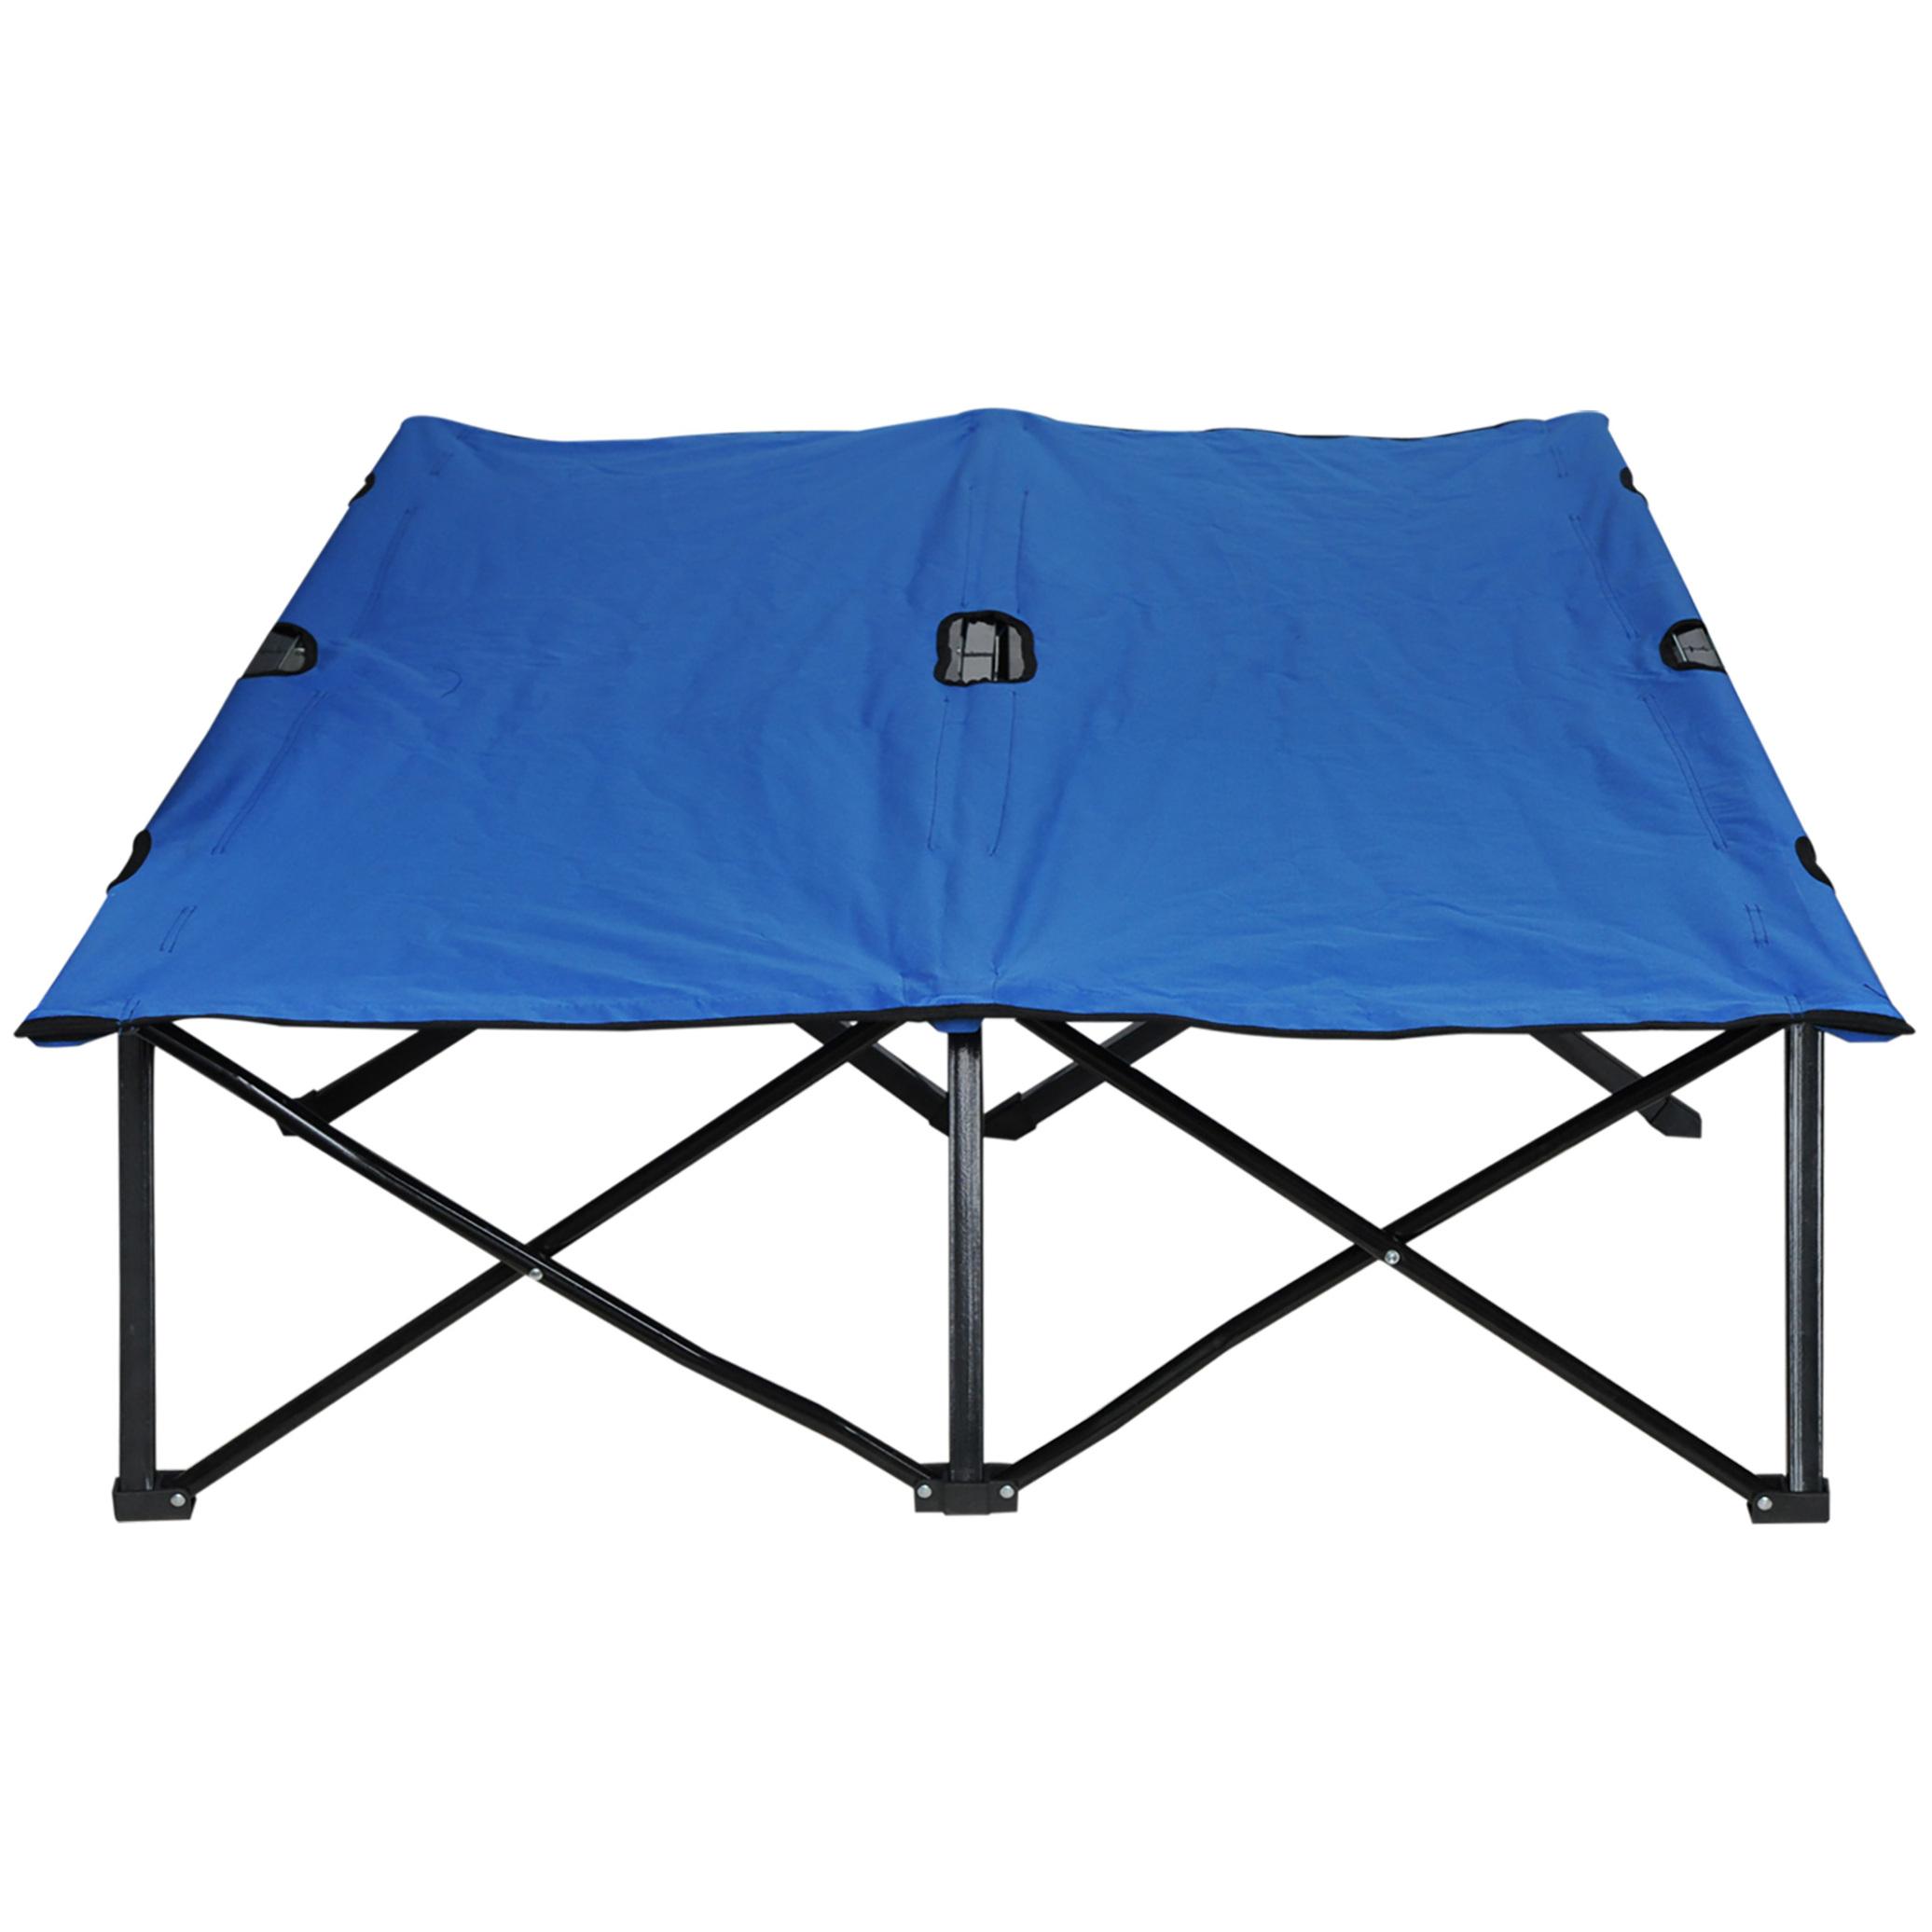 Lit de camp pliable double 193 x 125 x 40 cm avec sac de transport métal noir polyester Oxford bleu